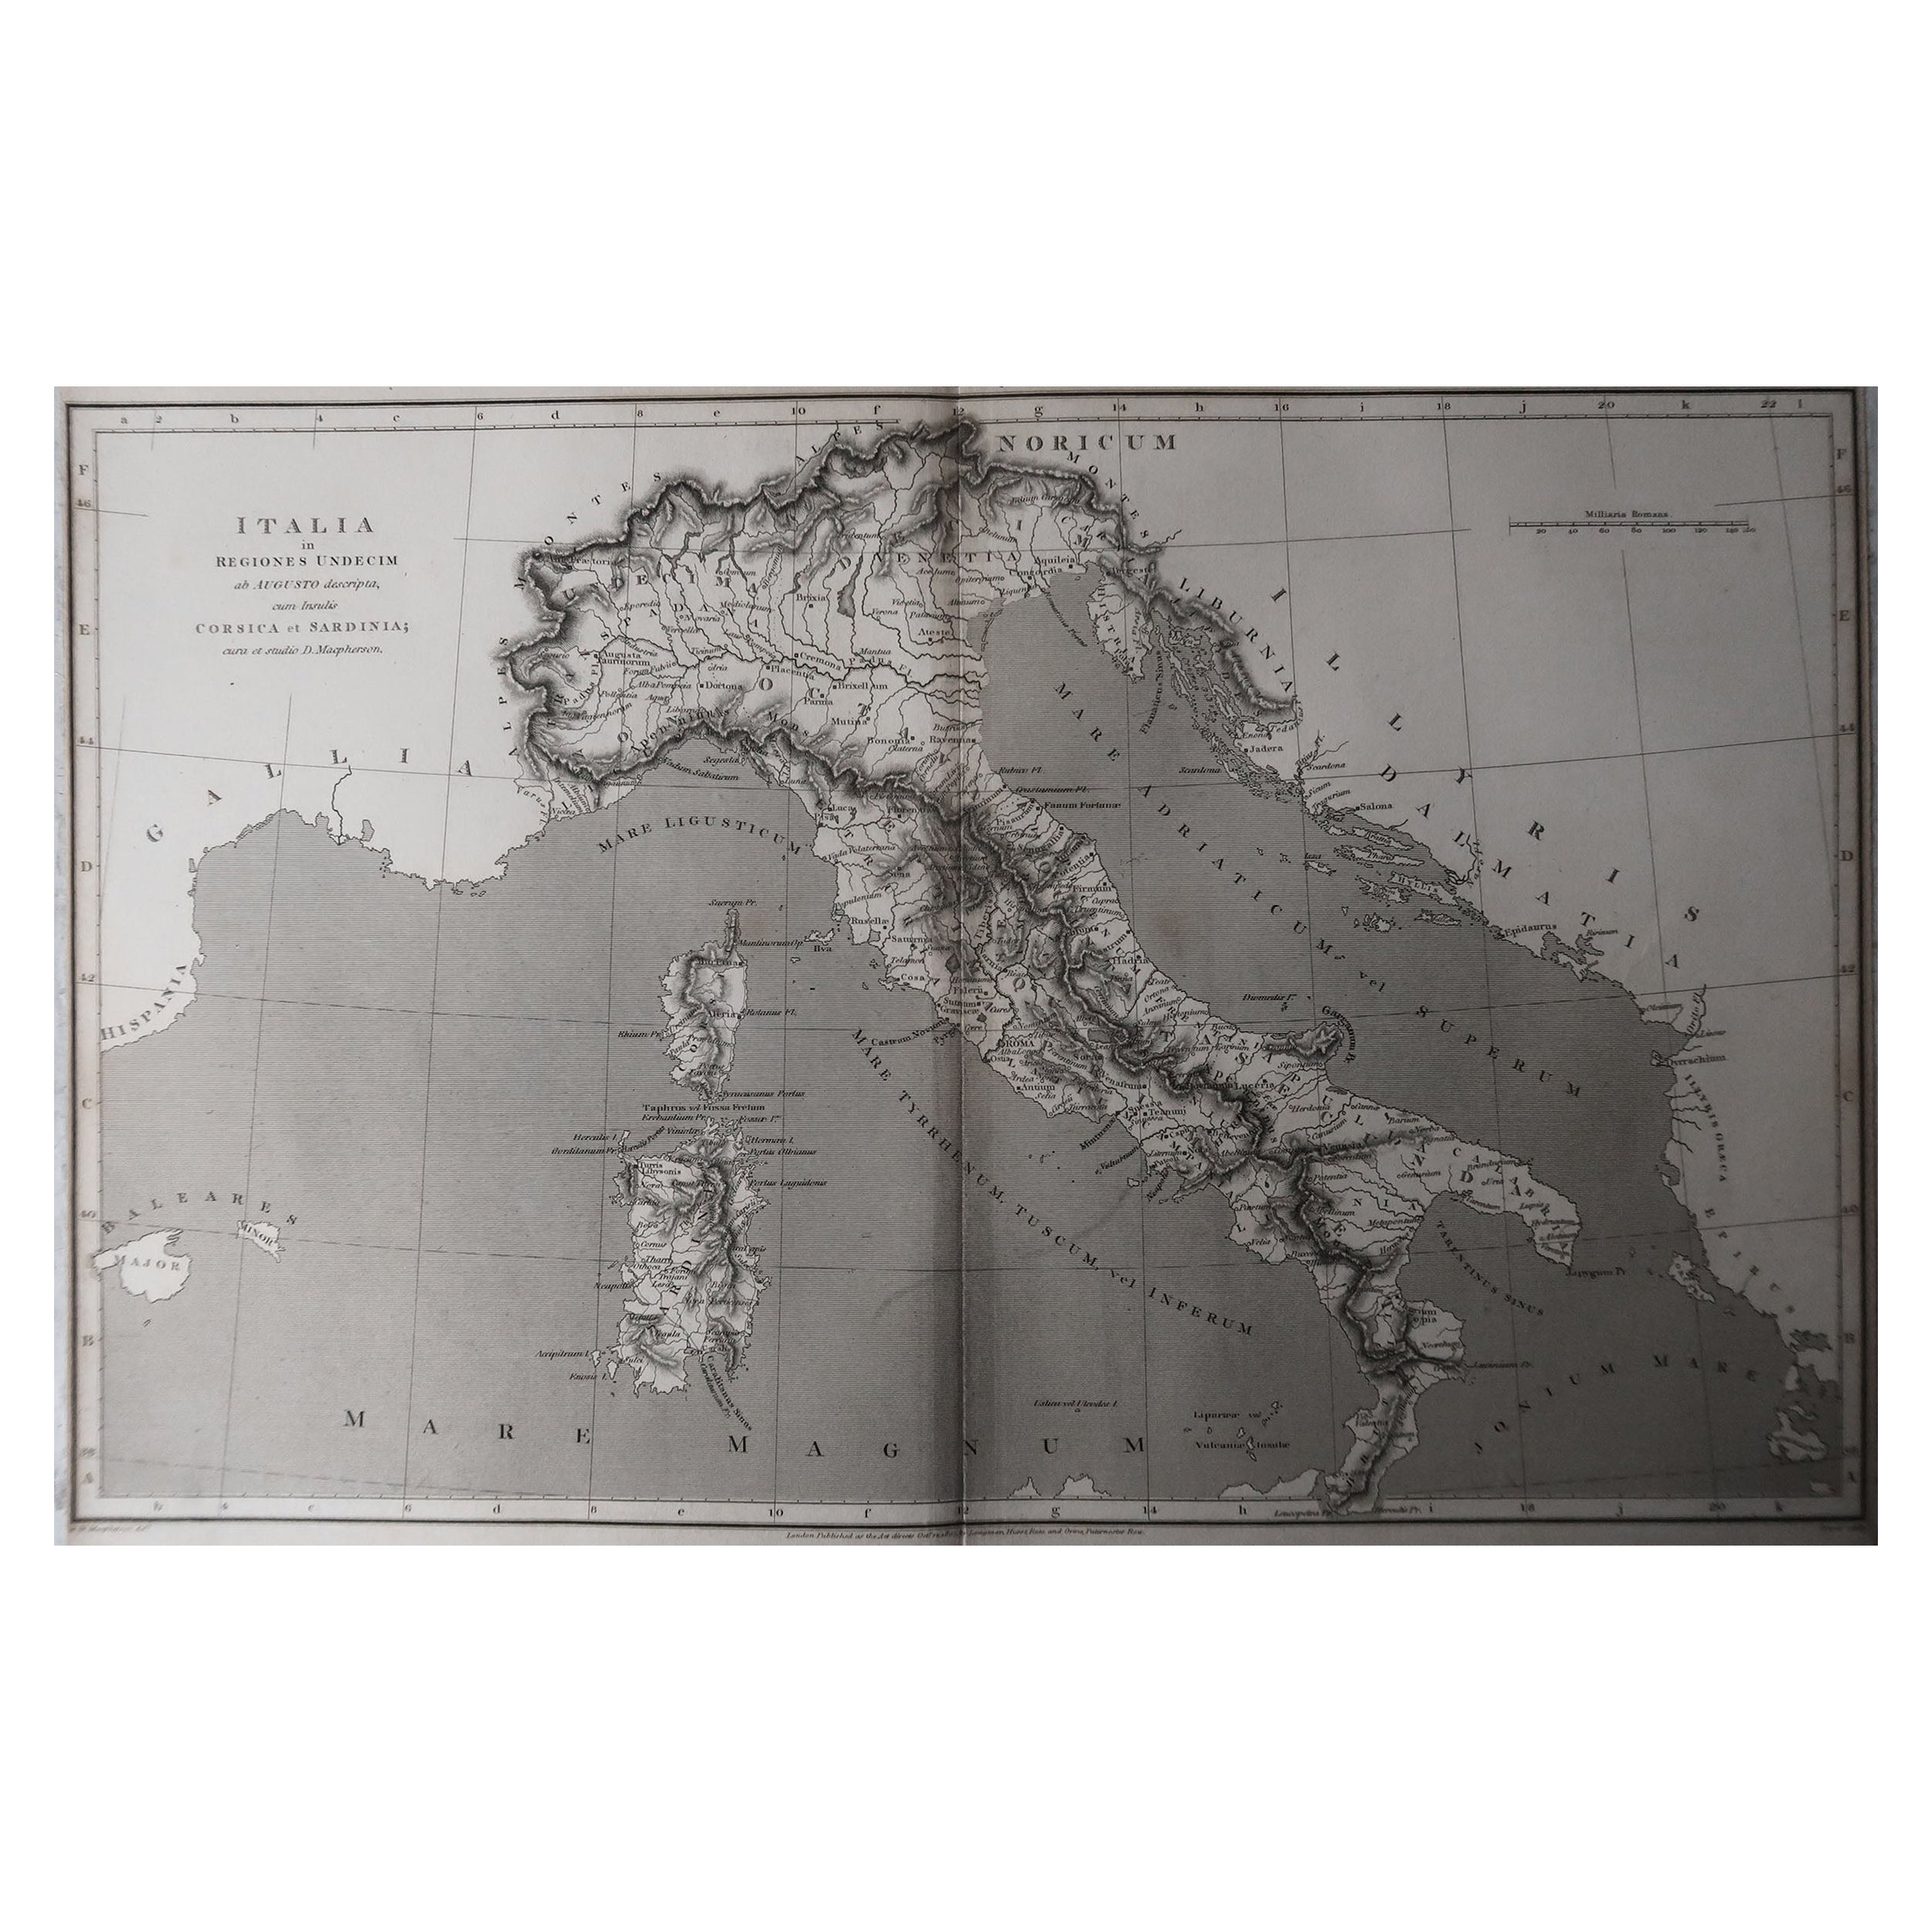 Grande carte de l'Italie

Dessiné sous la direction d'Arrowsmith.

Gravure sur cuivre

Publié par Longman, Hurst, Rees, Orme et Brown, 1820

Non encadré.